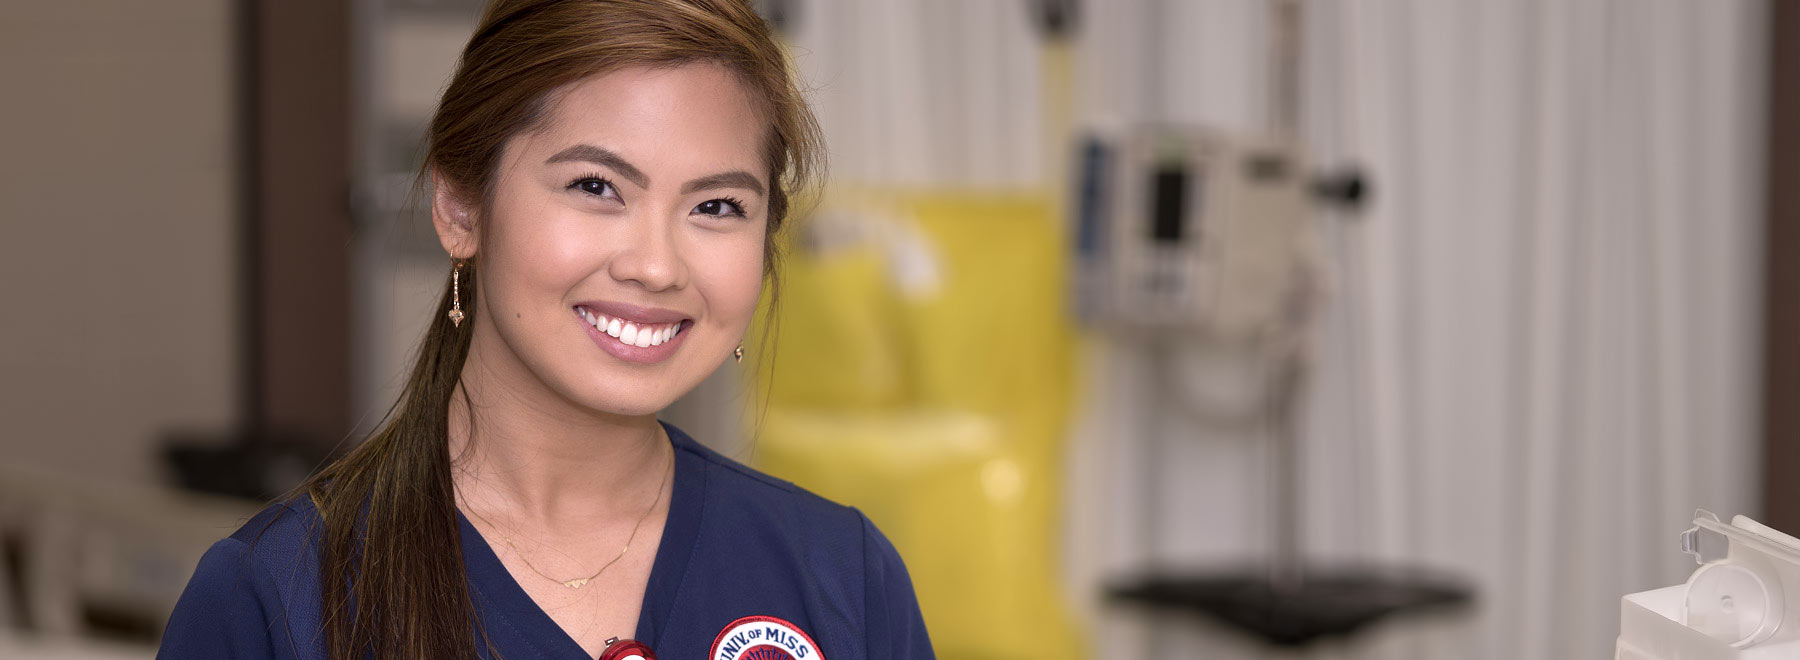 Smiling woman in nursing scrubs